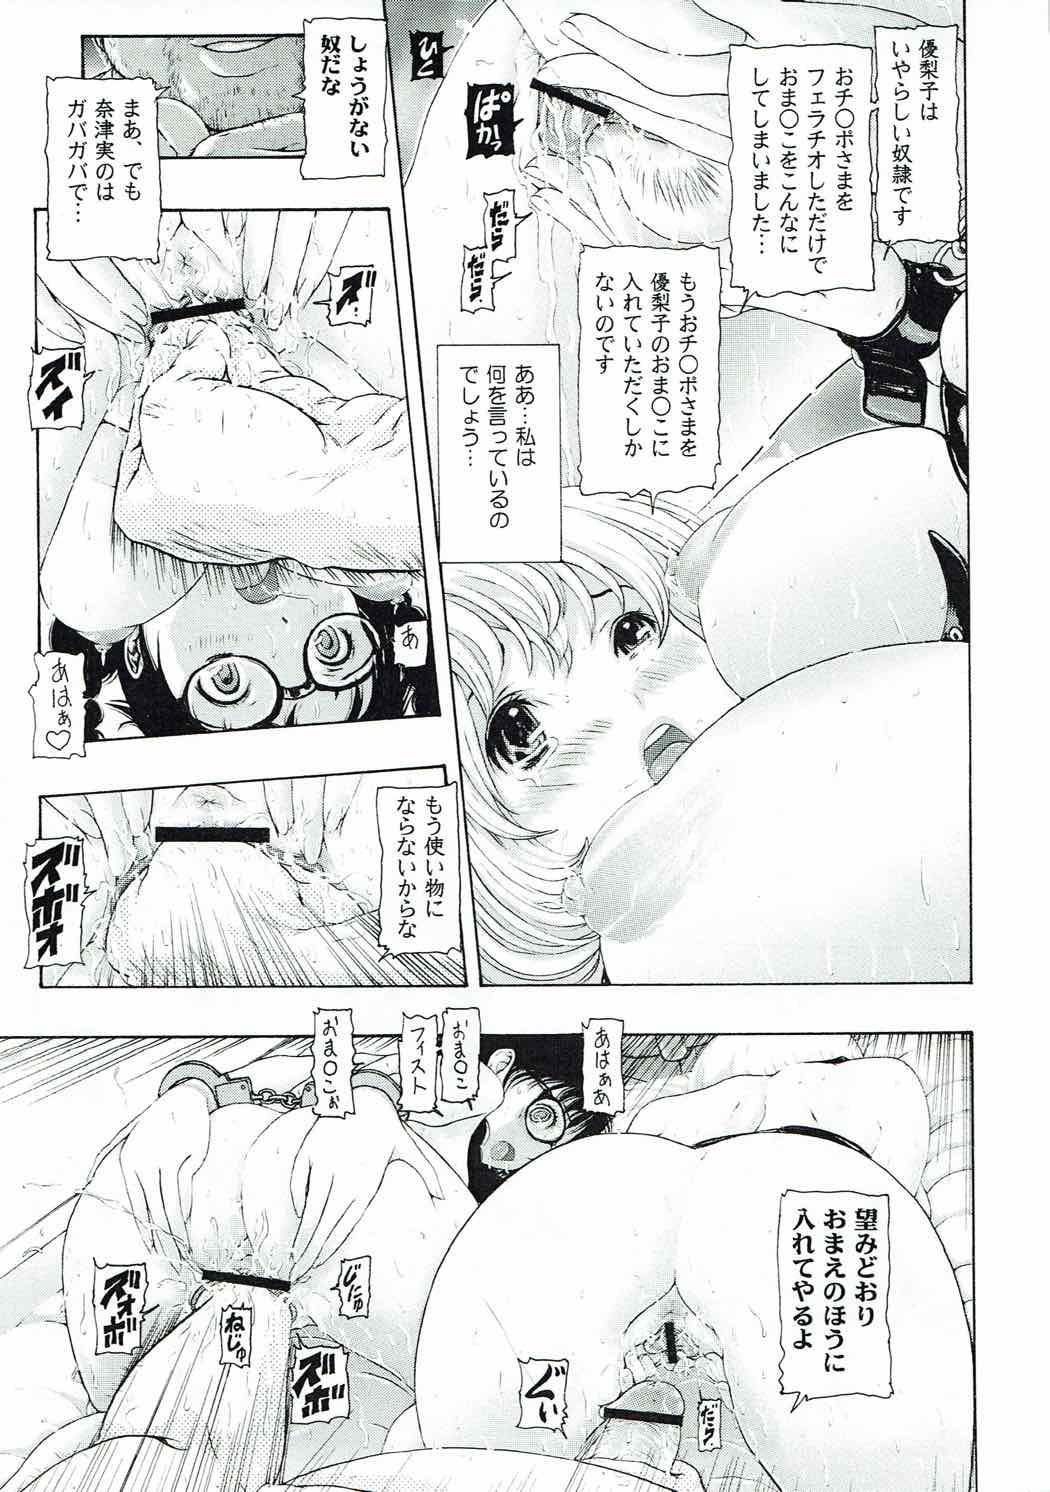 [け ゚ぴけ ゚ぴ(ぬャカな)] MANKOKU漫画家(とアシスタント)残酷物語 (バクマン。) 21